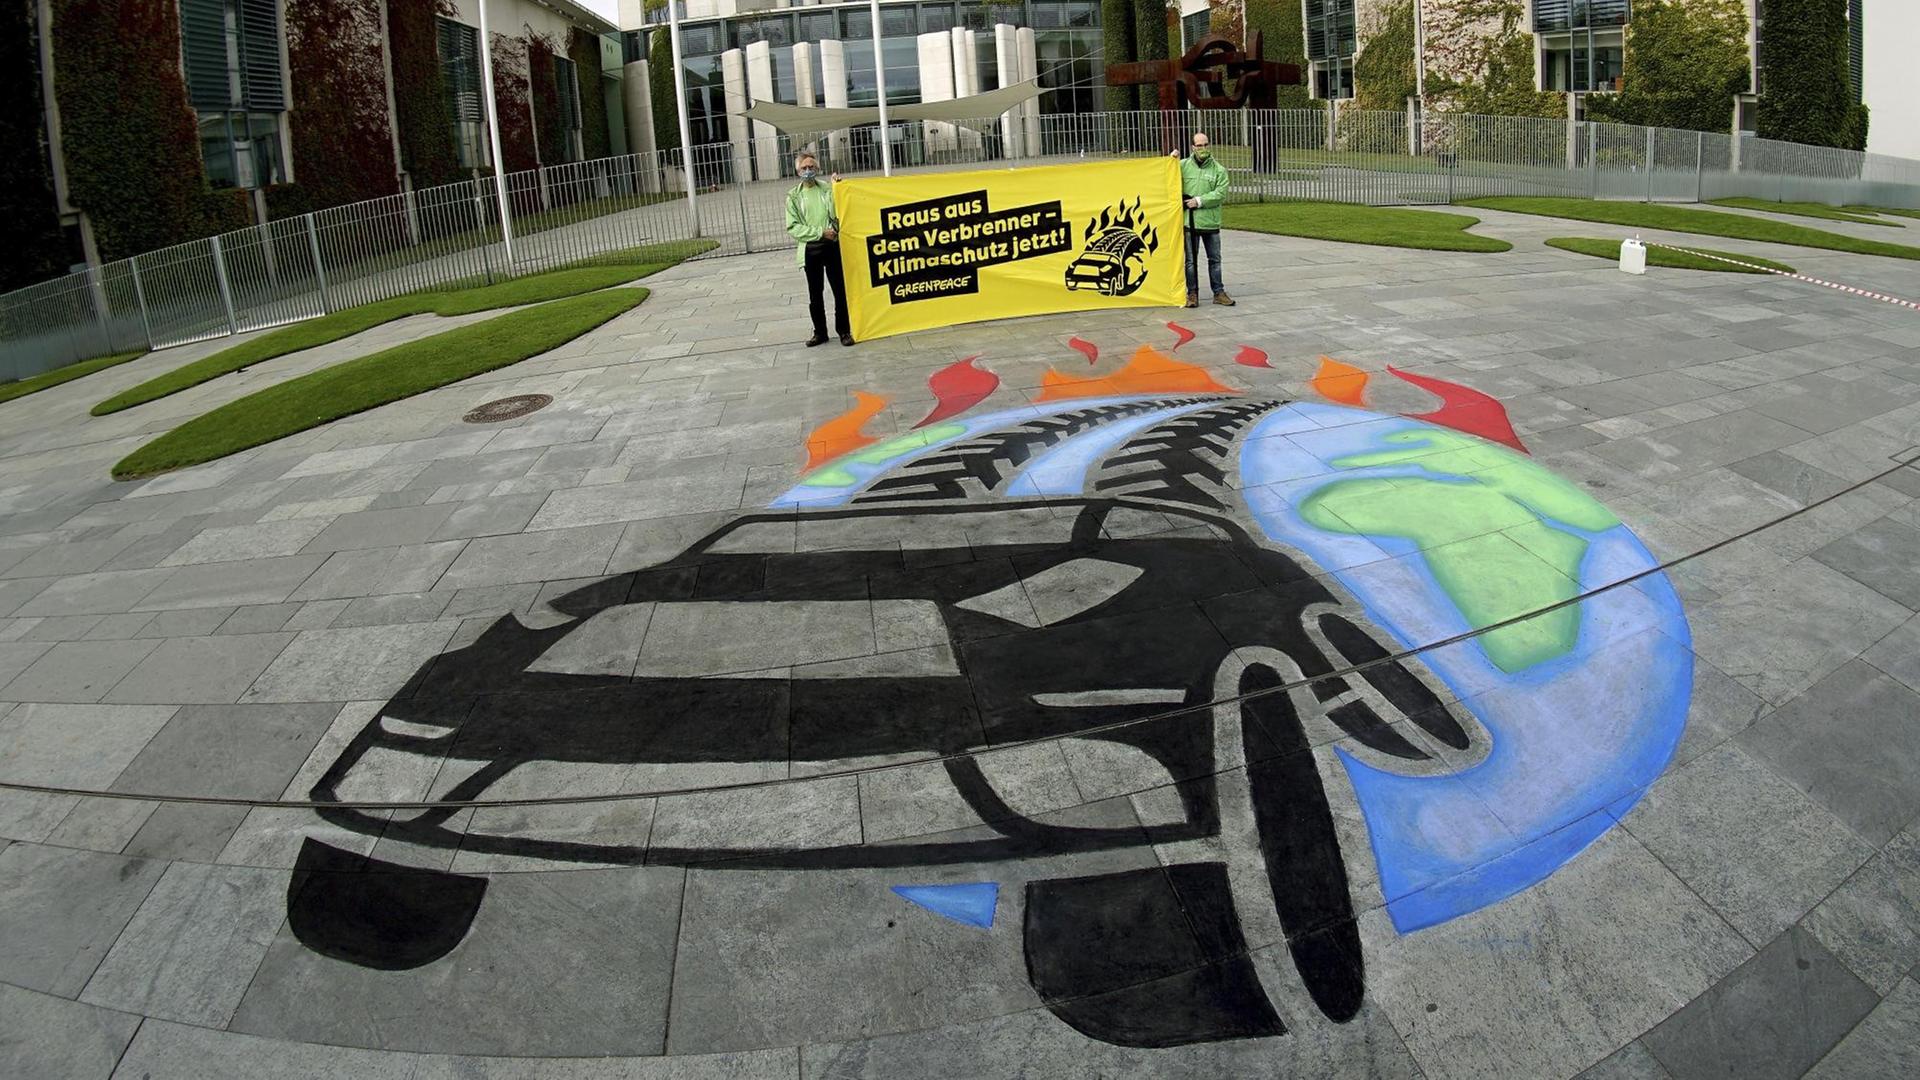 Ein-Greenpeace-Bild gegen Luftverschmutzung auf dem Asphalt vor dem Bundeskanzleramt in Berlin